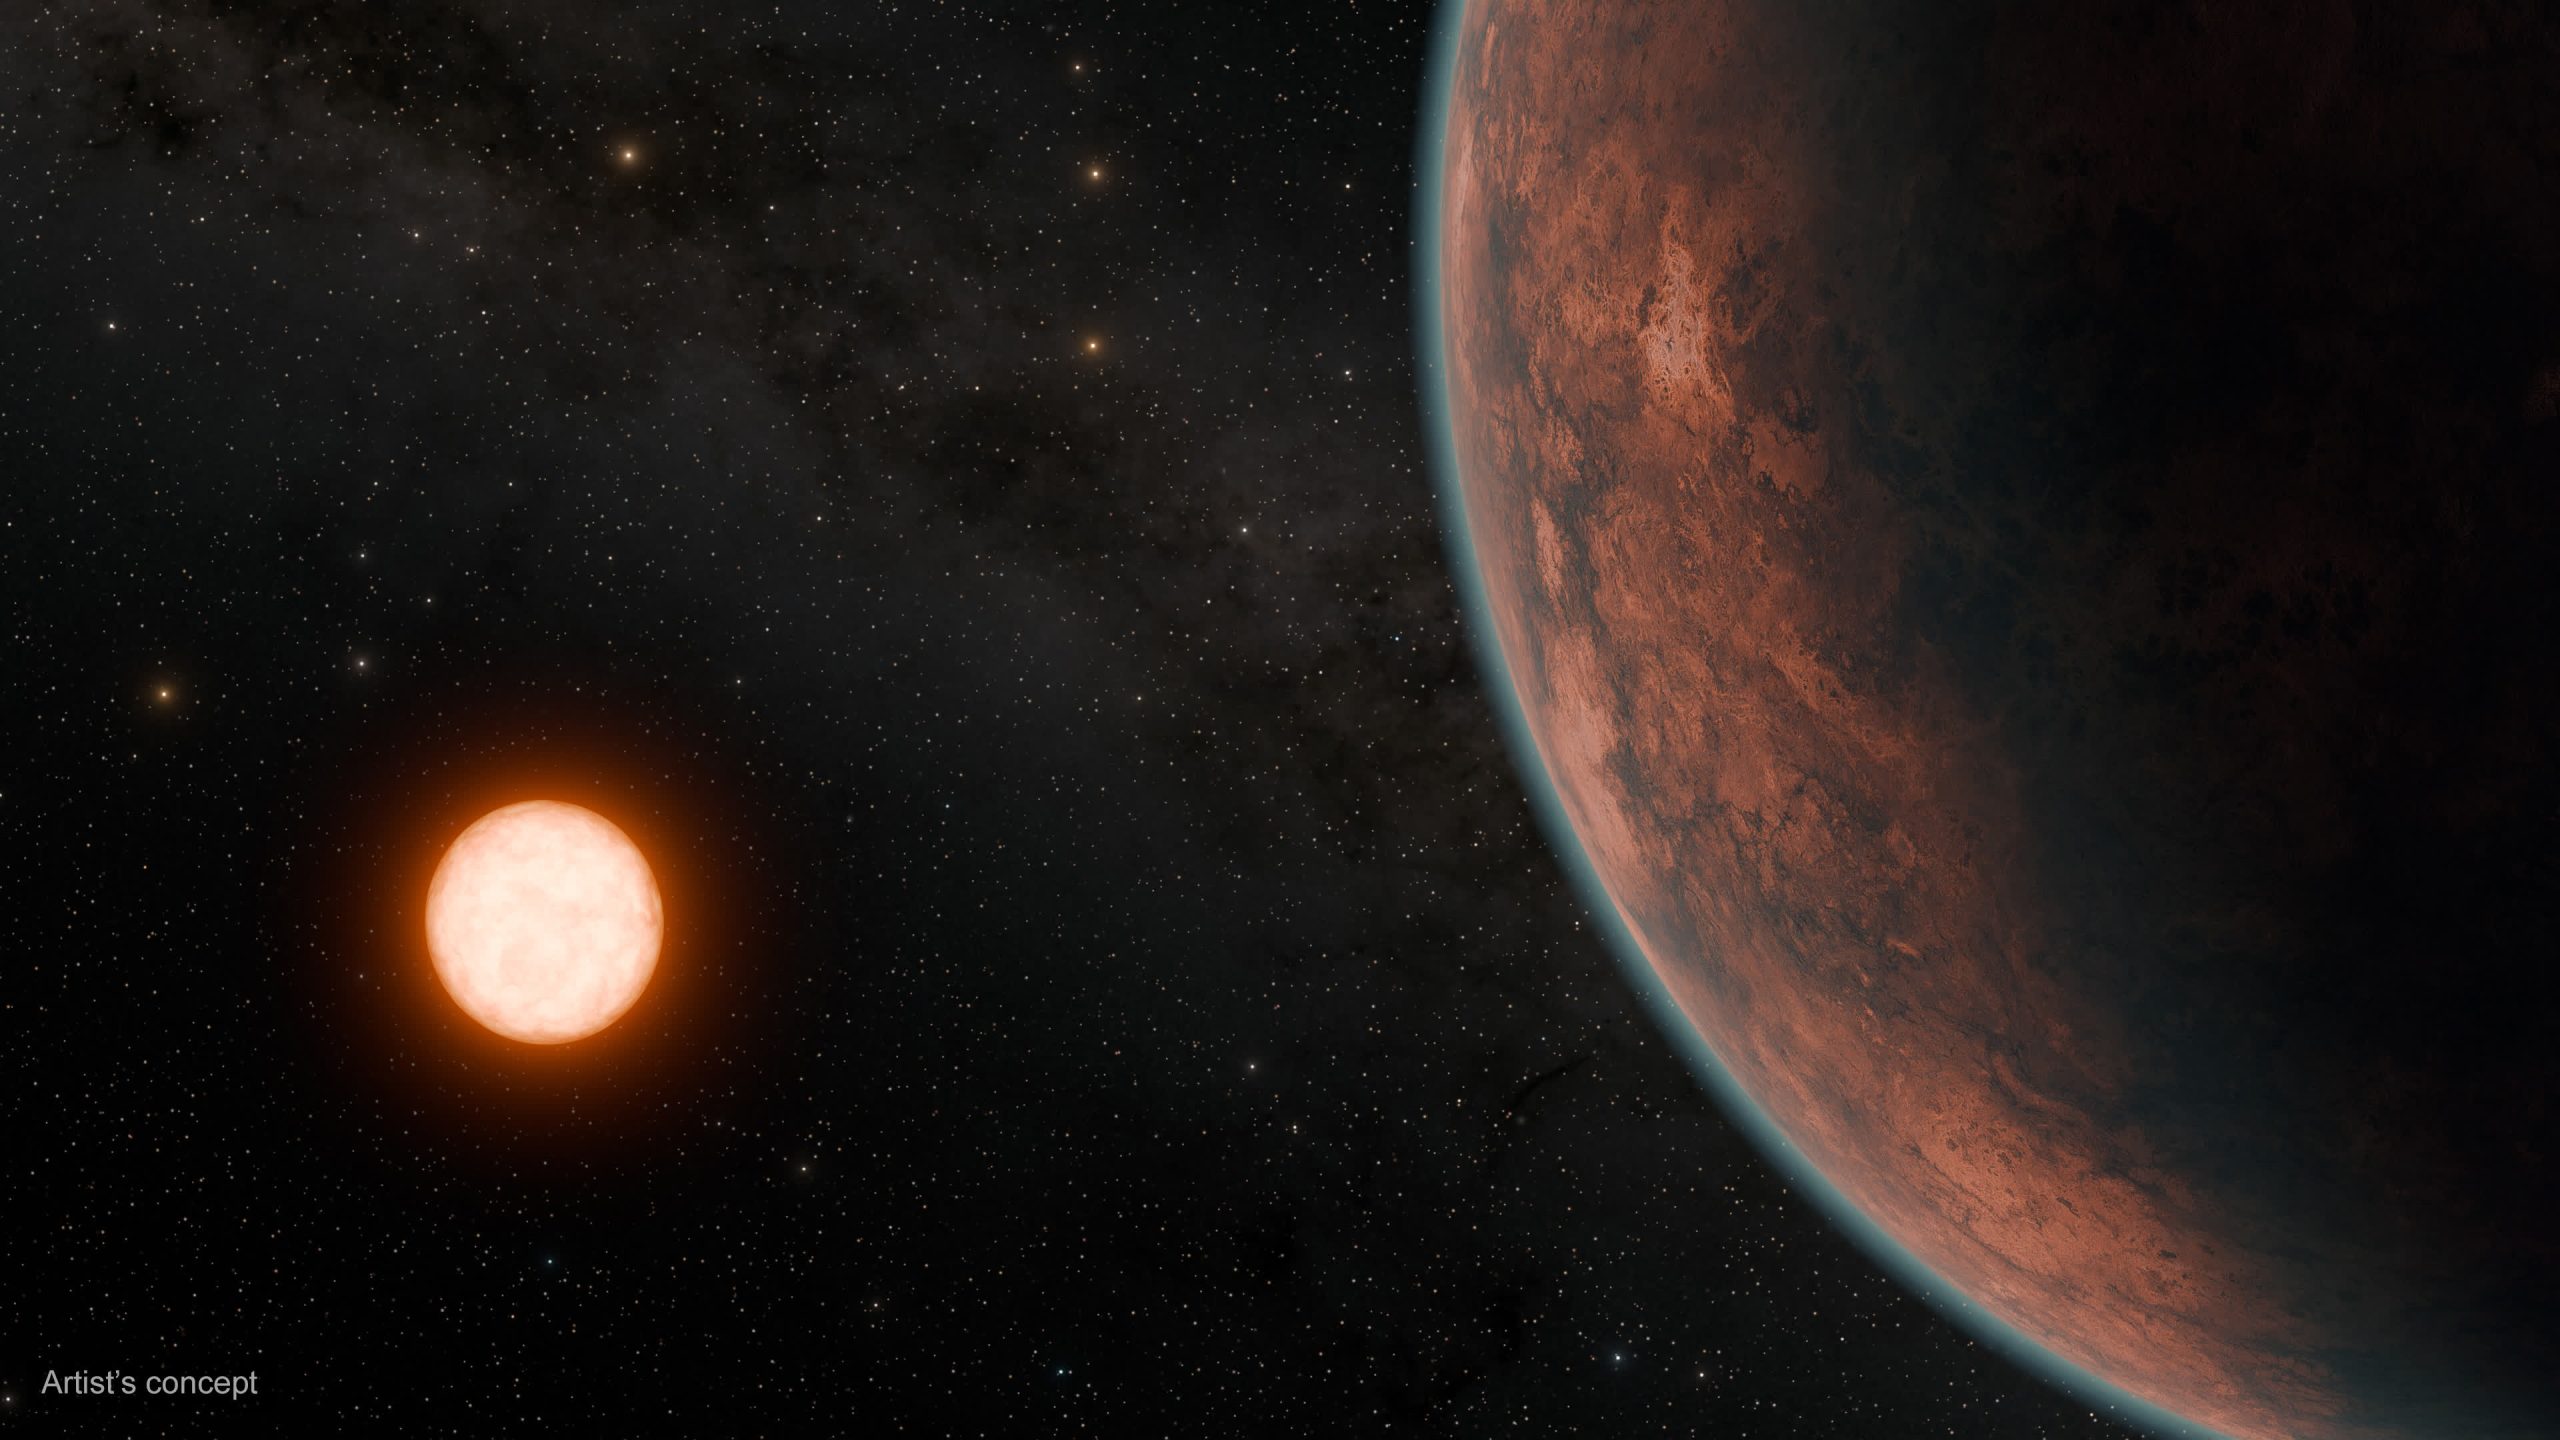 Los astrónomos descubren un exoplaneta del tamaño de la Tierra potencialmente habitable a 40 años luz de distancia